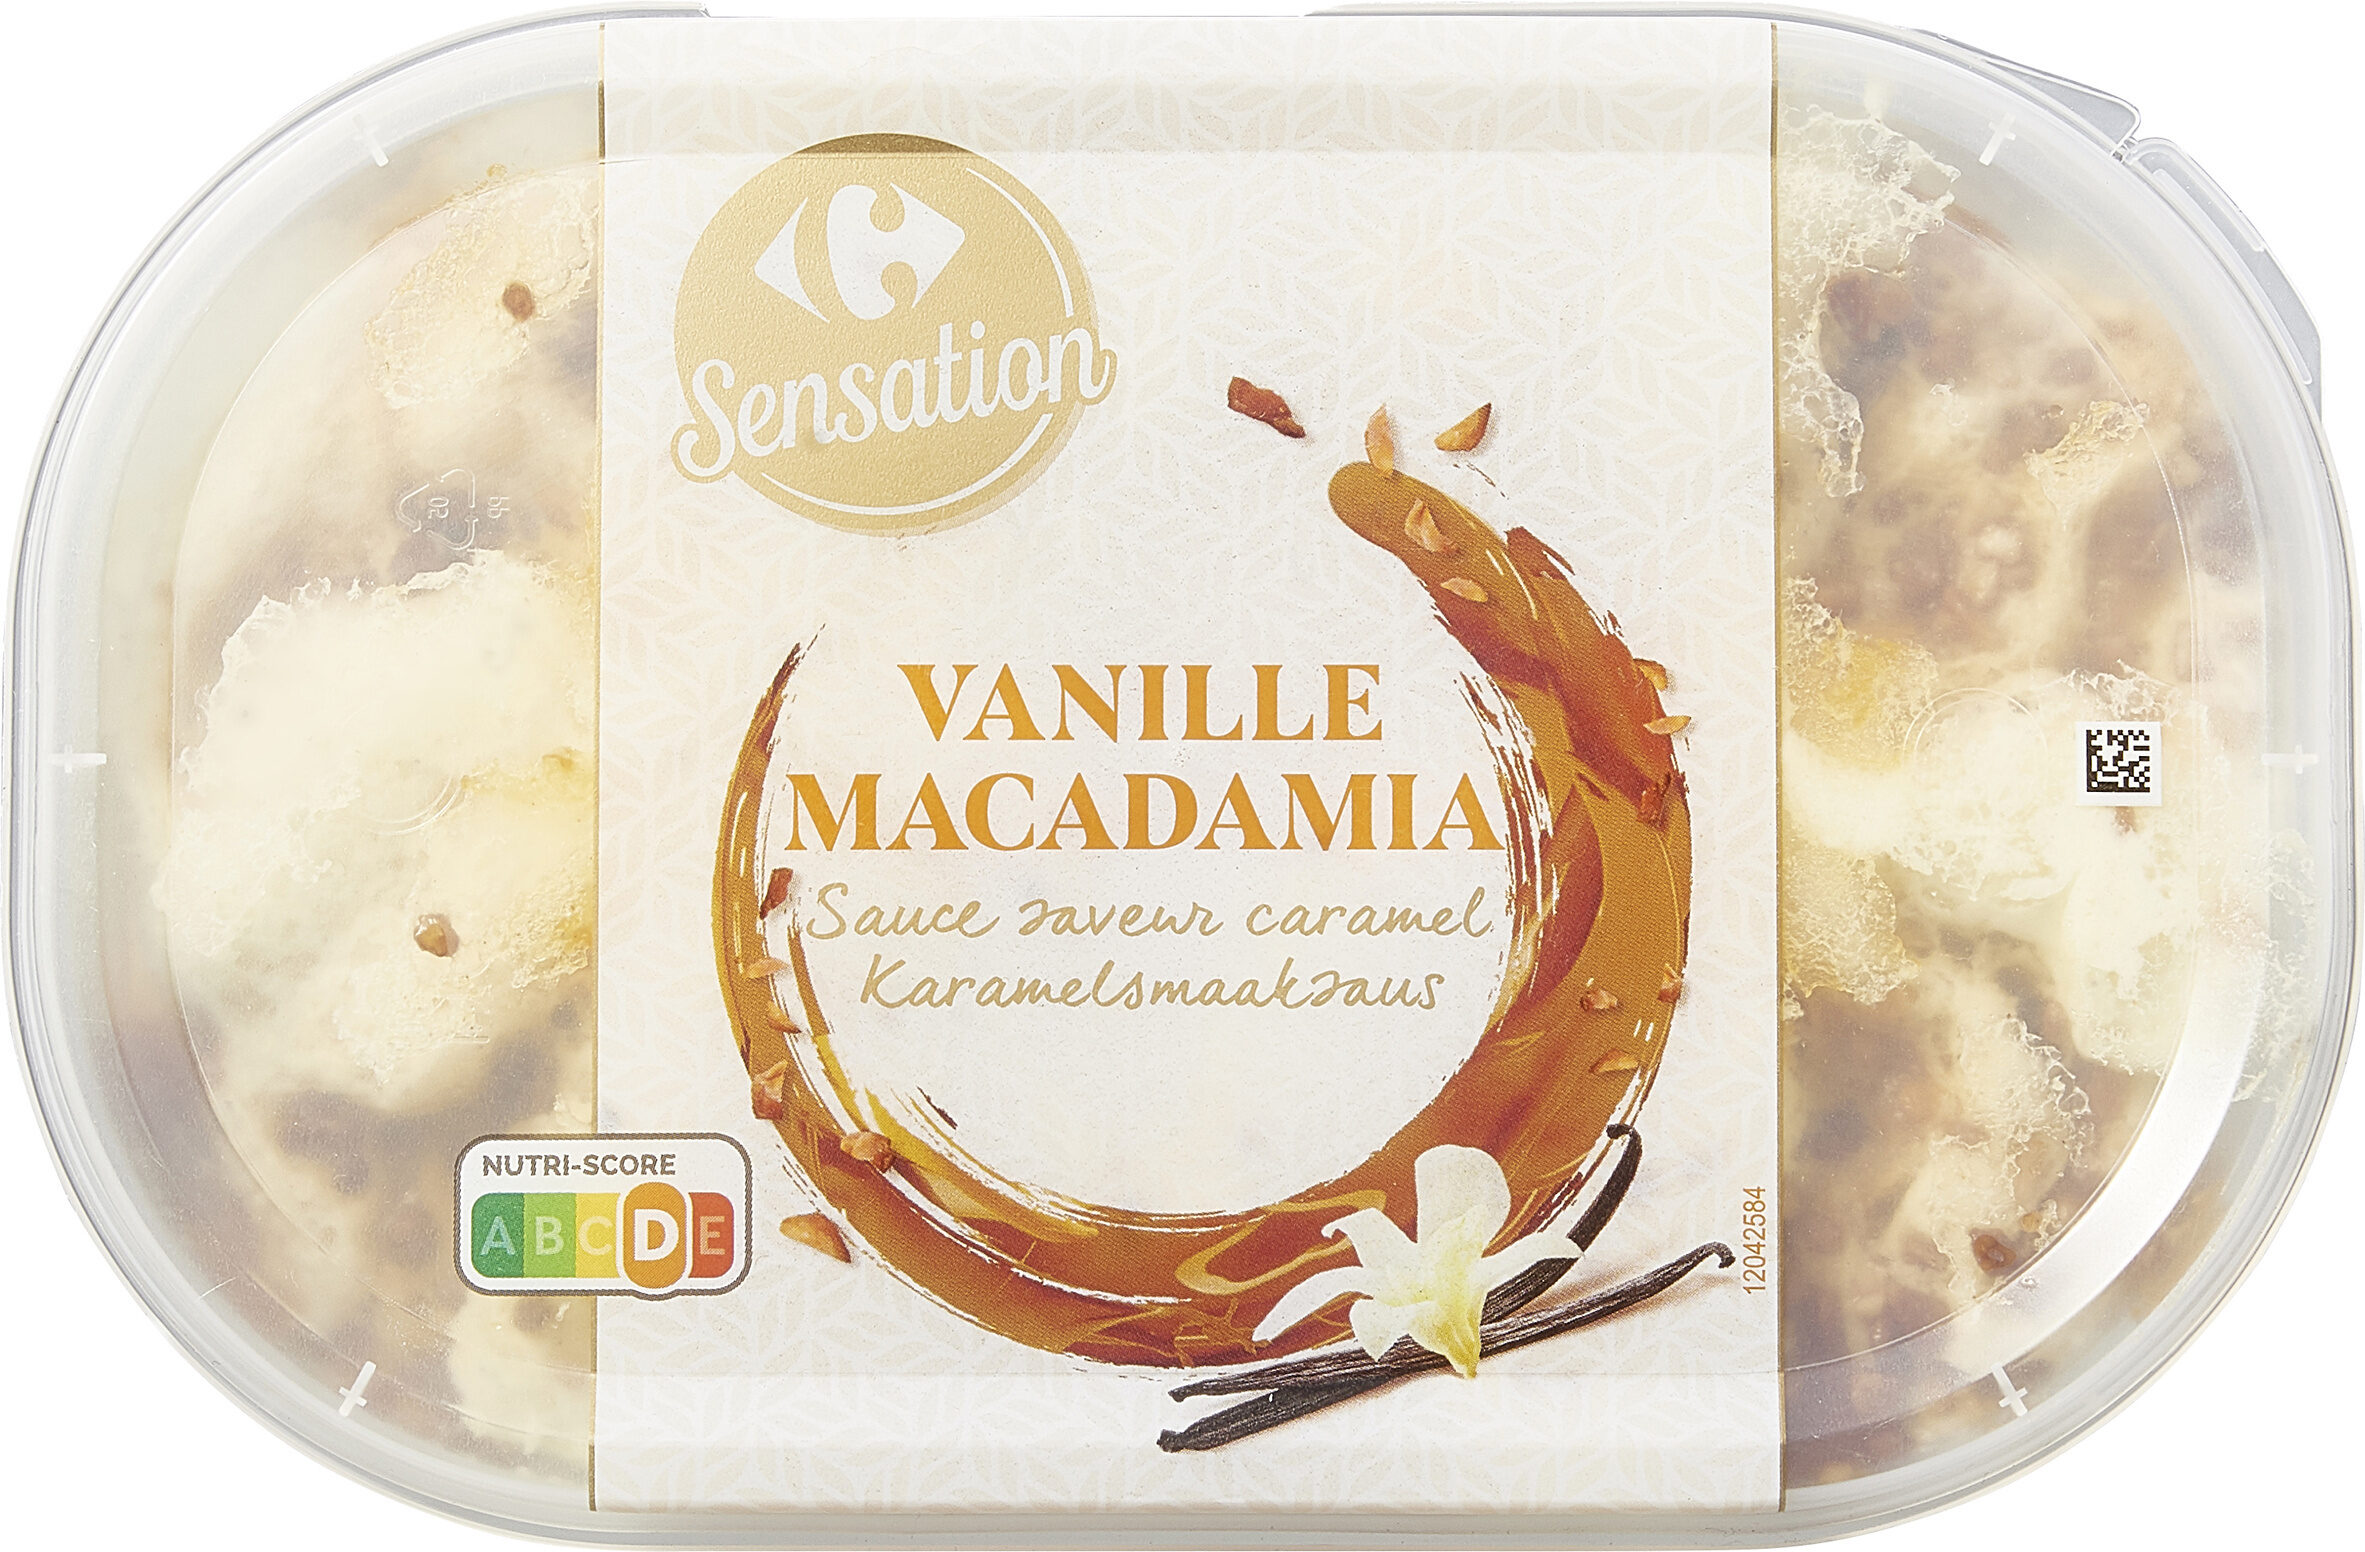 Vanille et Macadamia Caramélisée - Producto - fr